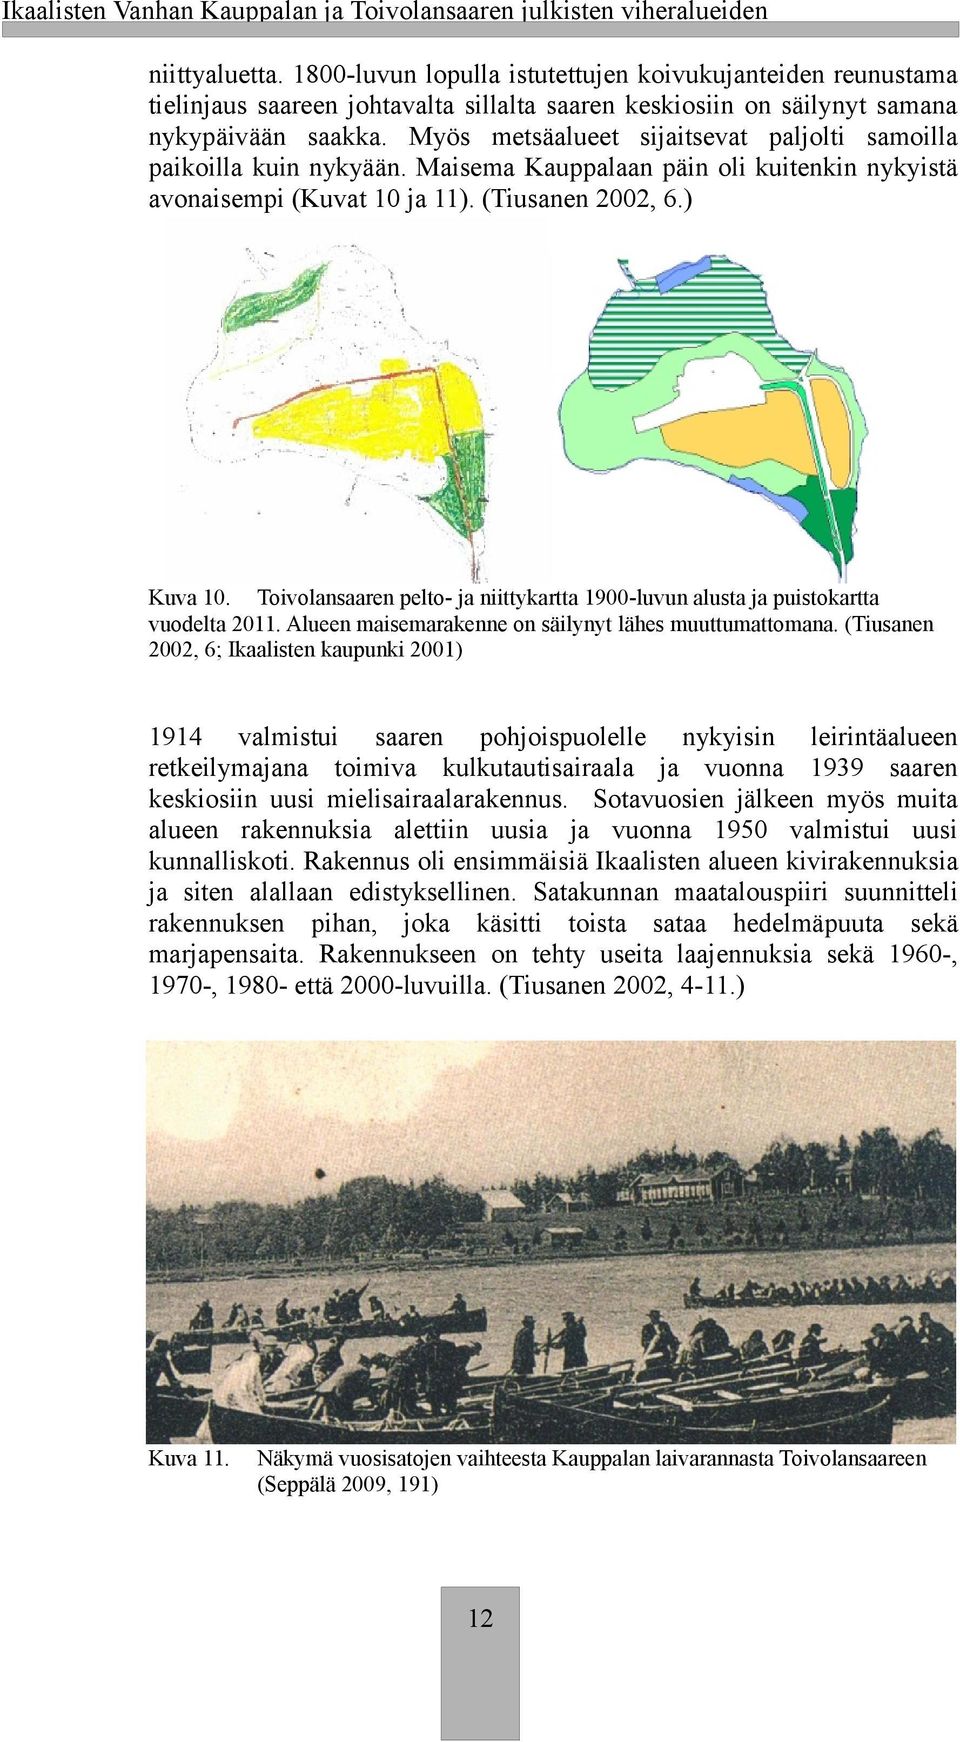 Myös metsäalueet sijaitsevat paljolti samoilla paioilla uin nyyään. Maisema Kauppalaan päin oli uitenin nyyistä avonaisempi (Kuvat 10 ja 11). (Tiusanen 2002, 6.) Kuva 10.